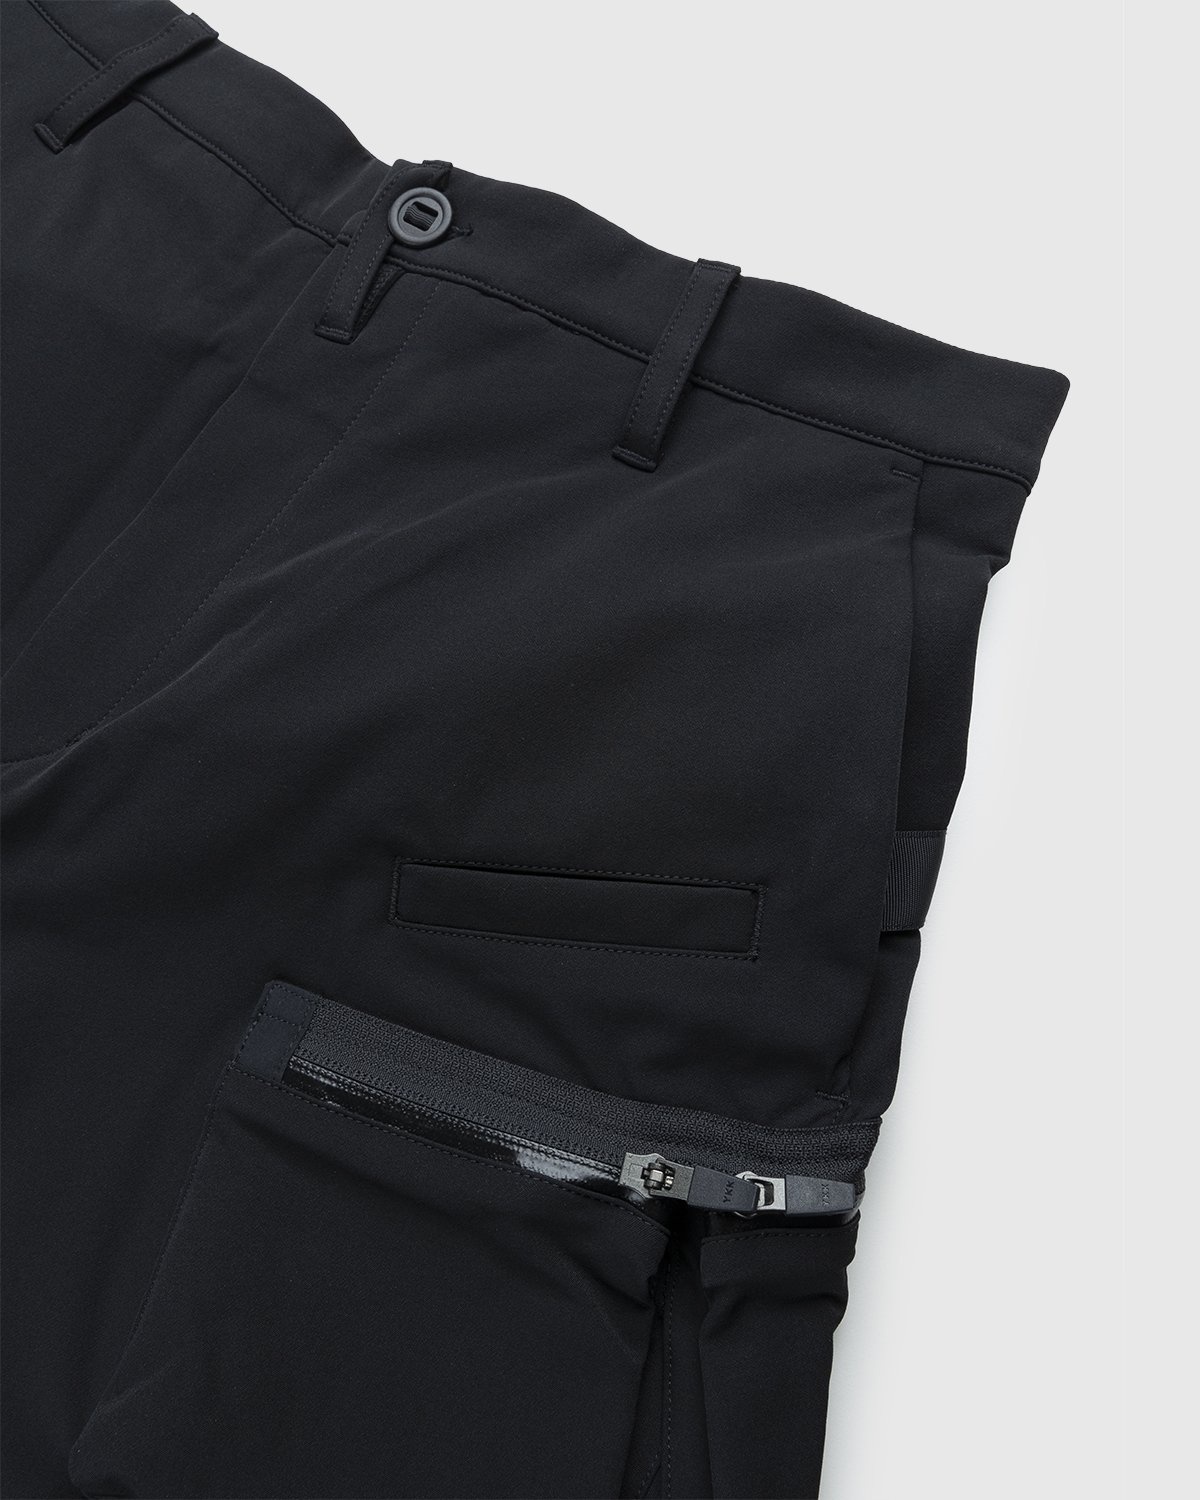 ACRONYM – P41-DS Pant Black - Pants - Black - Image 5